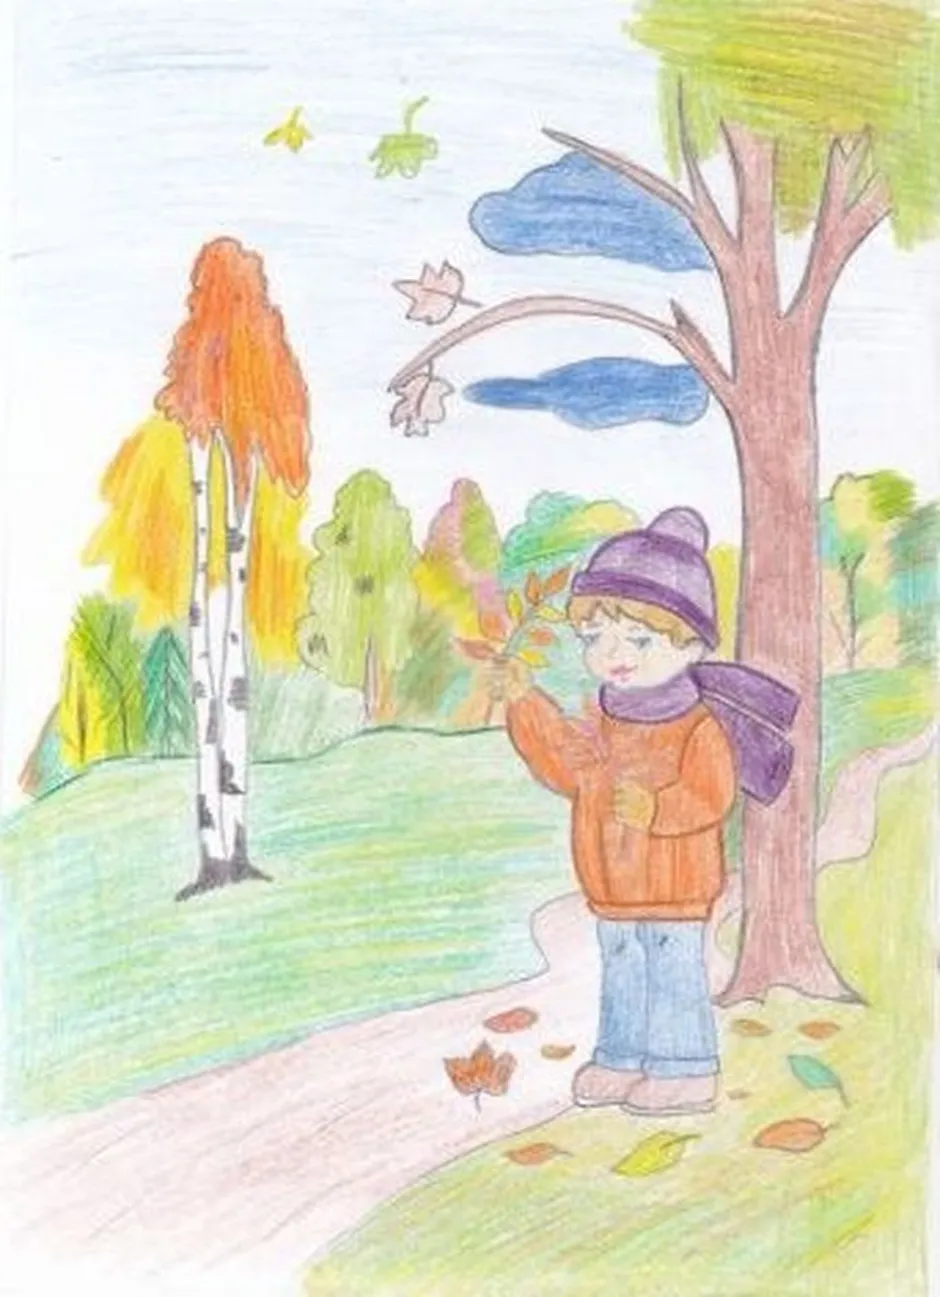 Иллюстрация к стихотворению если. Стихи с рисунками. Уж небо осенью дышало рисунок к стихотворению. Детские стихи с рисунками. Иллюстрация к стихотворению осень.